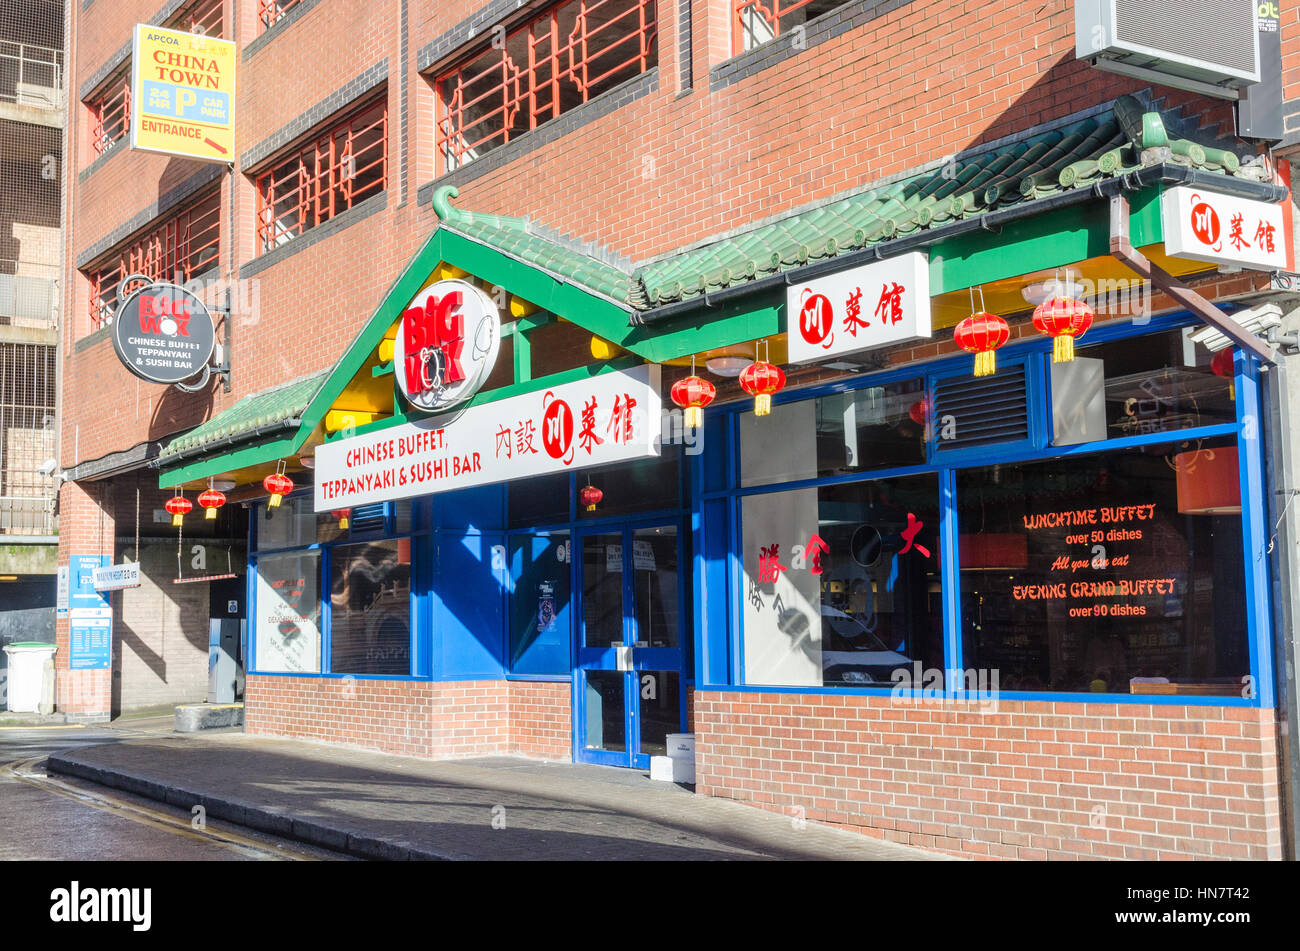 La gran wok buffet chino teppanyaki y sushi bar en Wrottesley Street,  Birmingham Fotografía de stock - Alamy